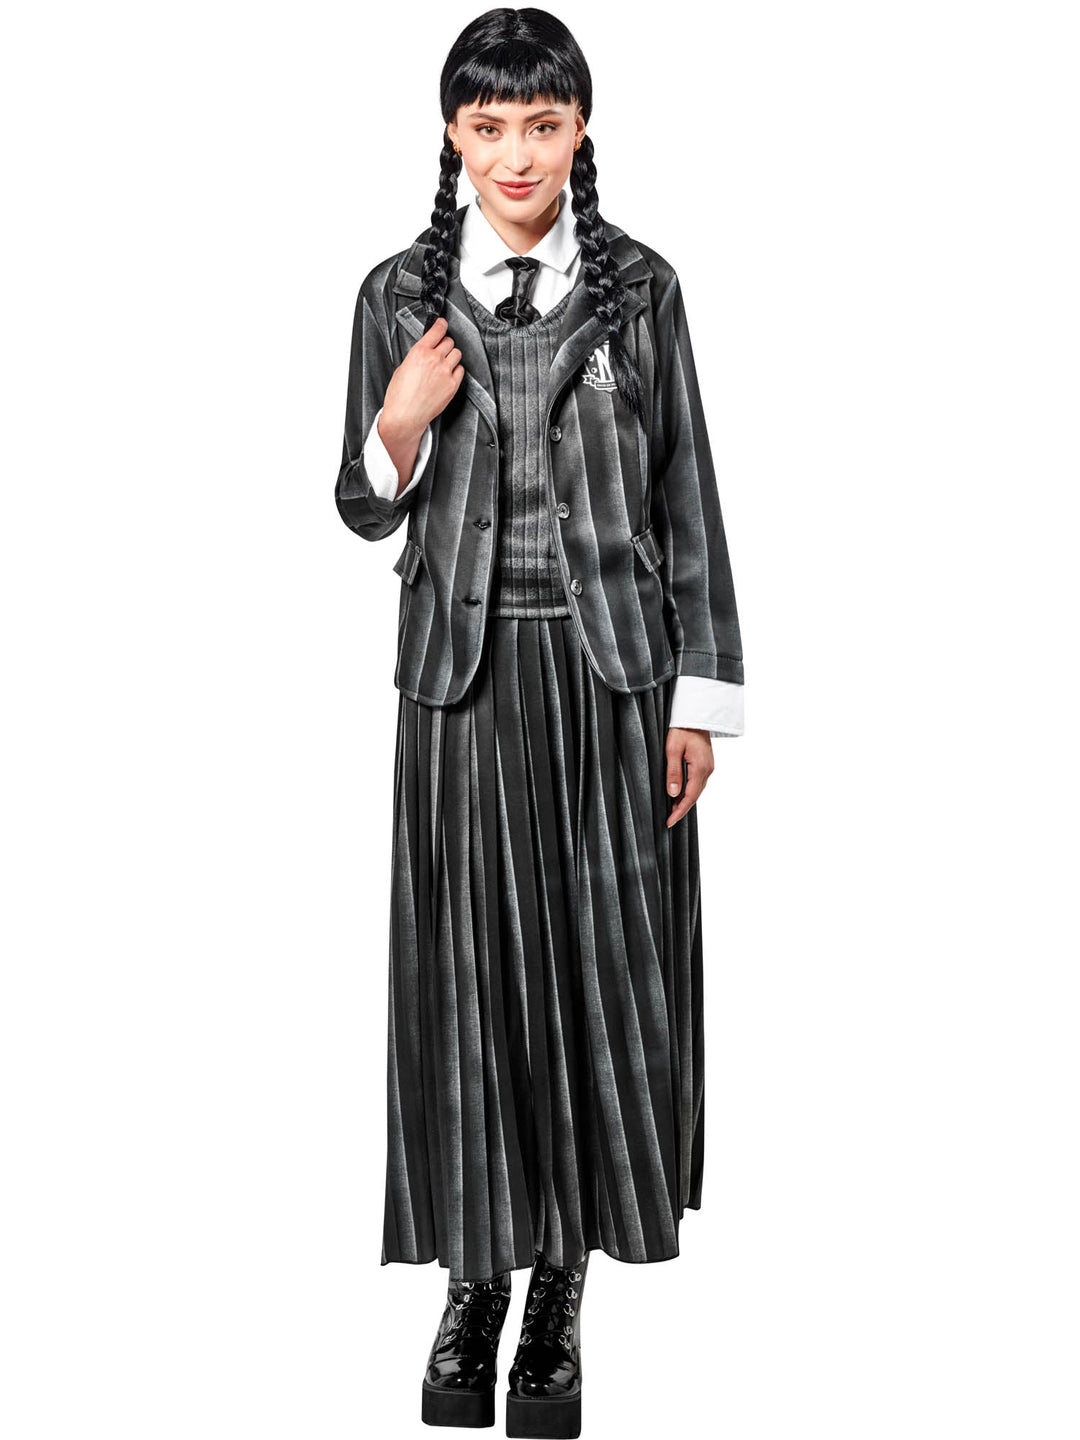 Wednesday Addams Costume Nevermore School Uniform_1